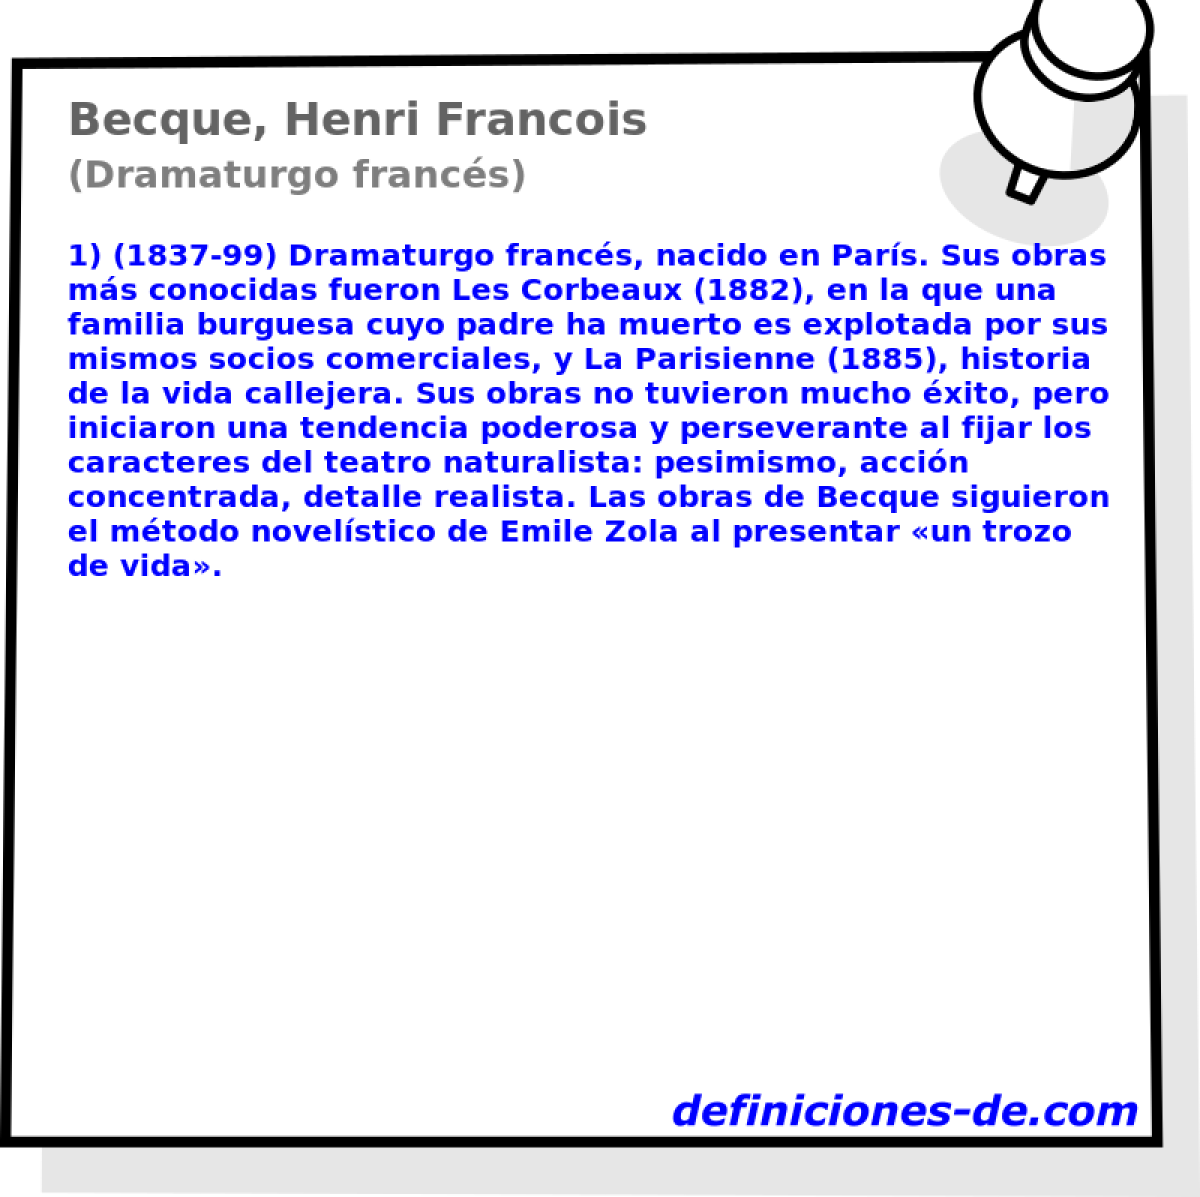 Becque, Henri Francois (Dramaturgo francs)